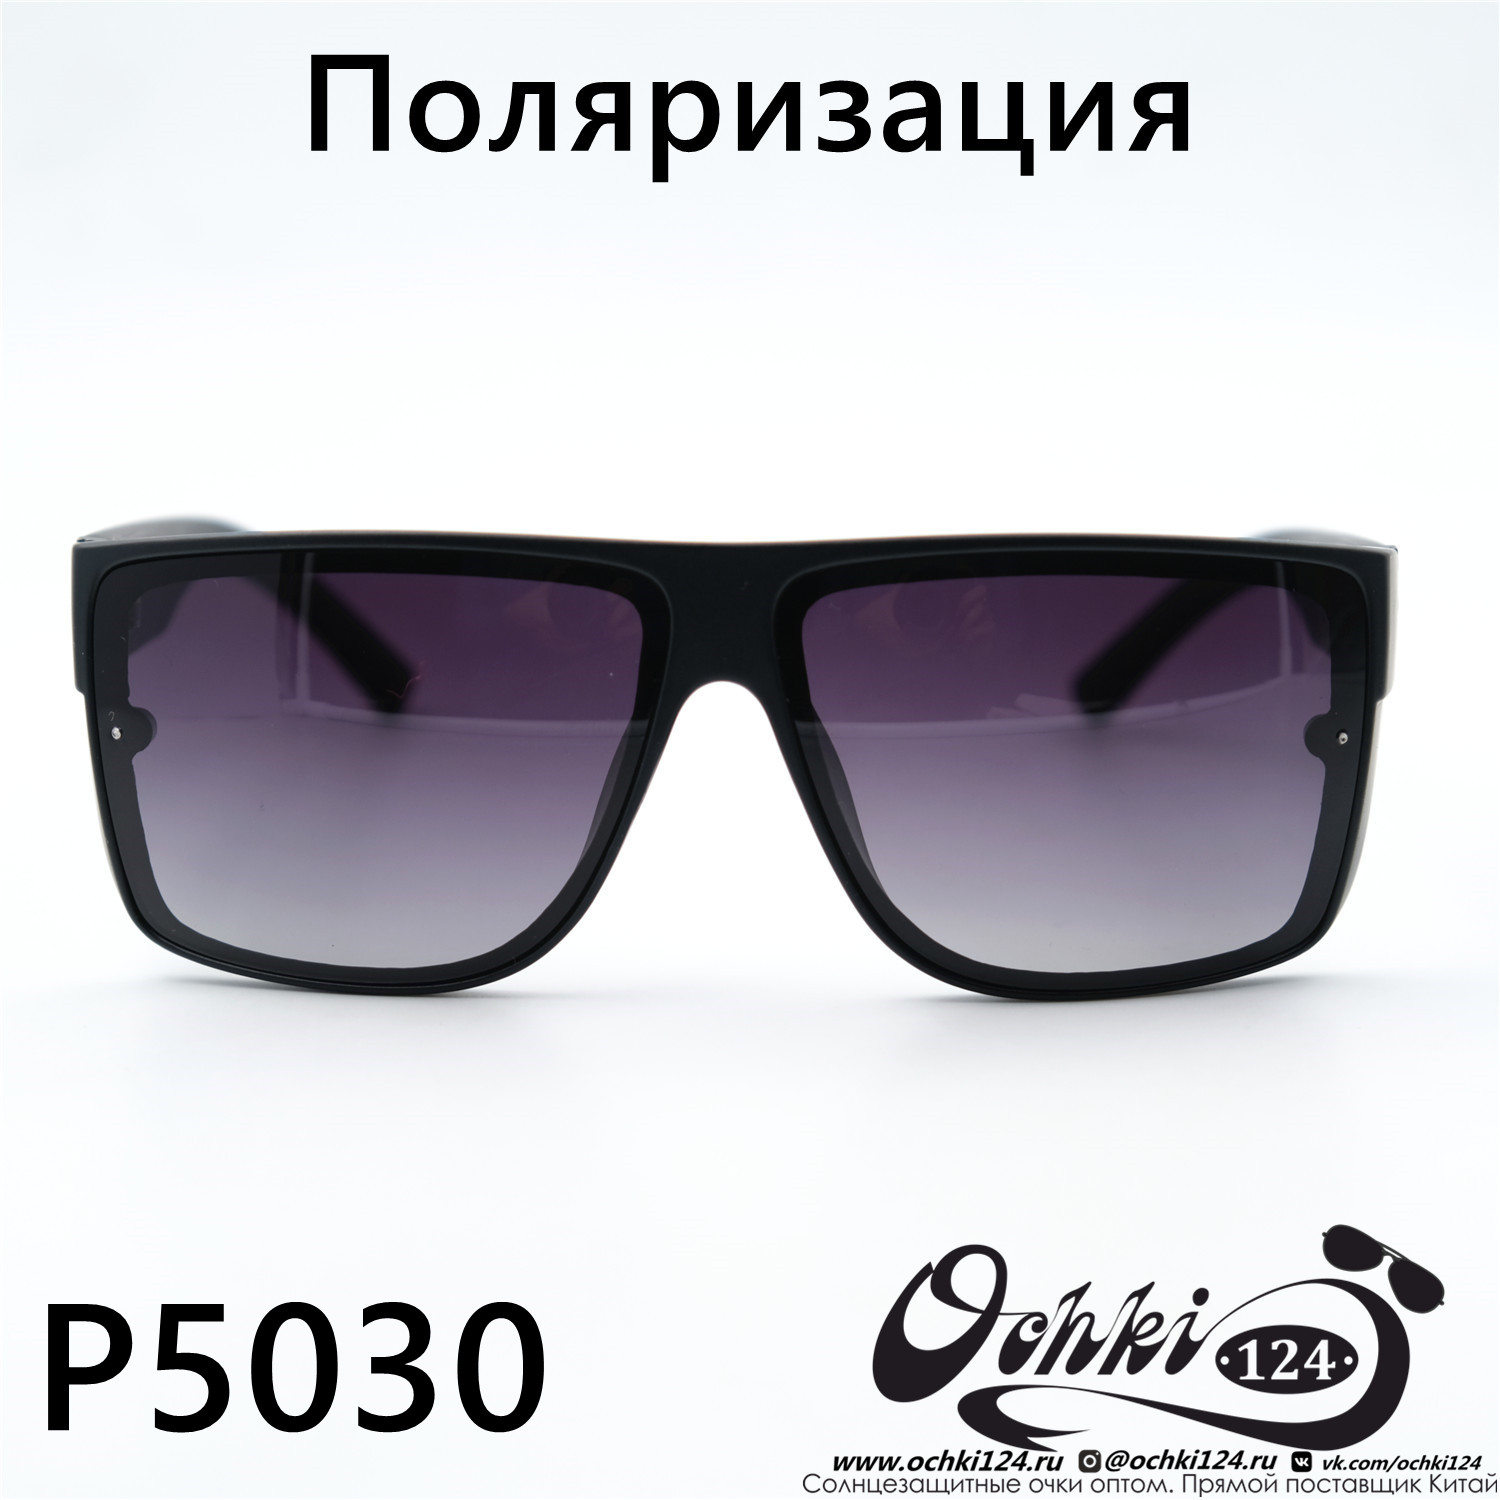  Солнцезащитные очки картинка 2023 Мужские Стандартные Maiersha P5030-C5 